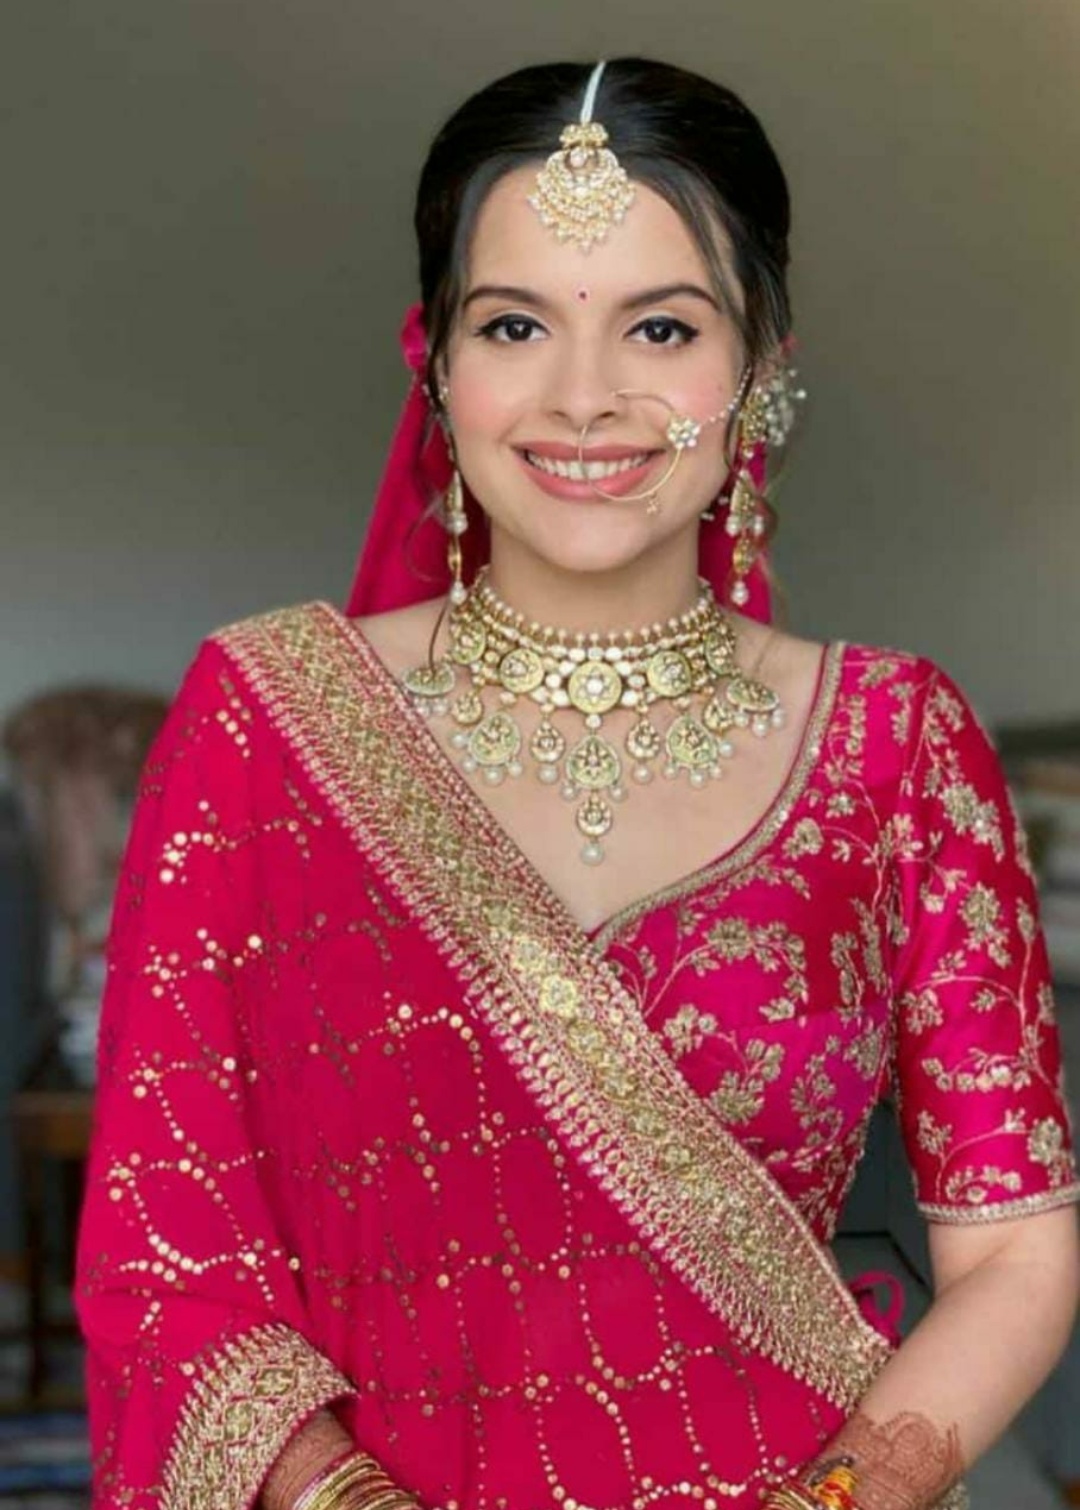 manpreet-saini-makeup-artist-mumbai